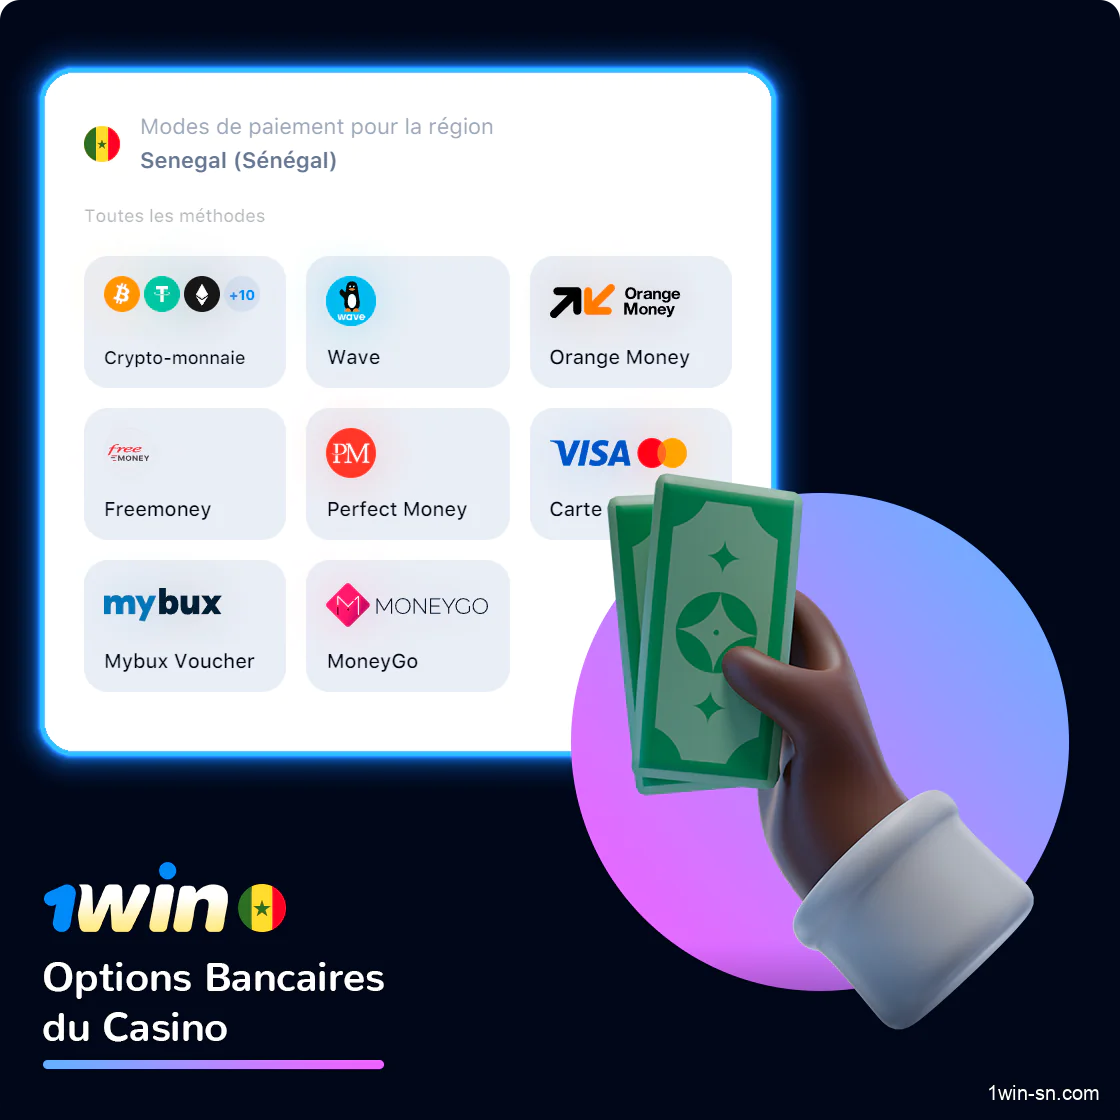 Les options bancaires du casino en ligne 1Win pour les sénégalais